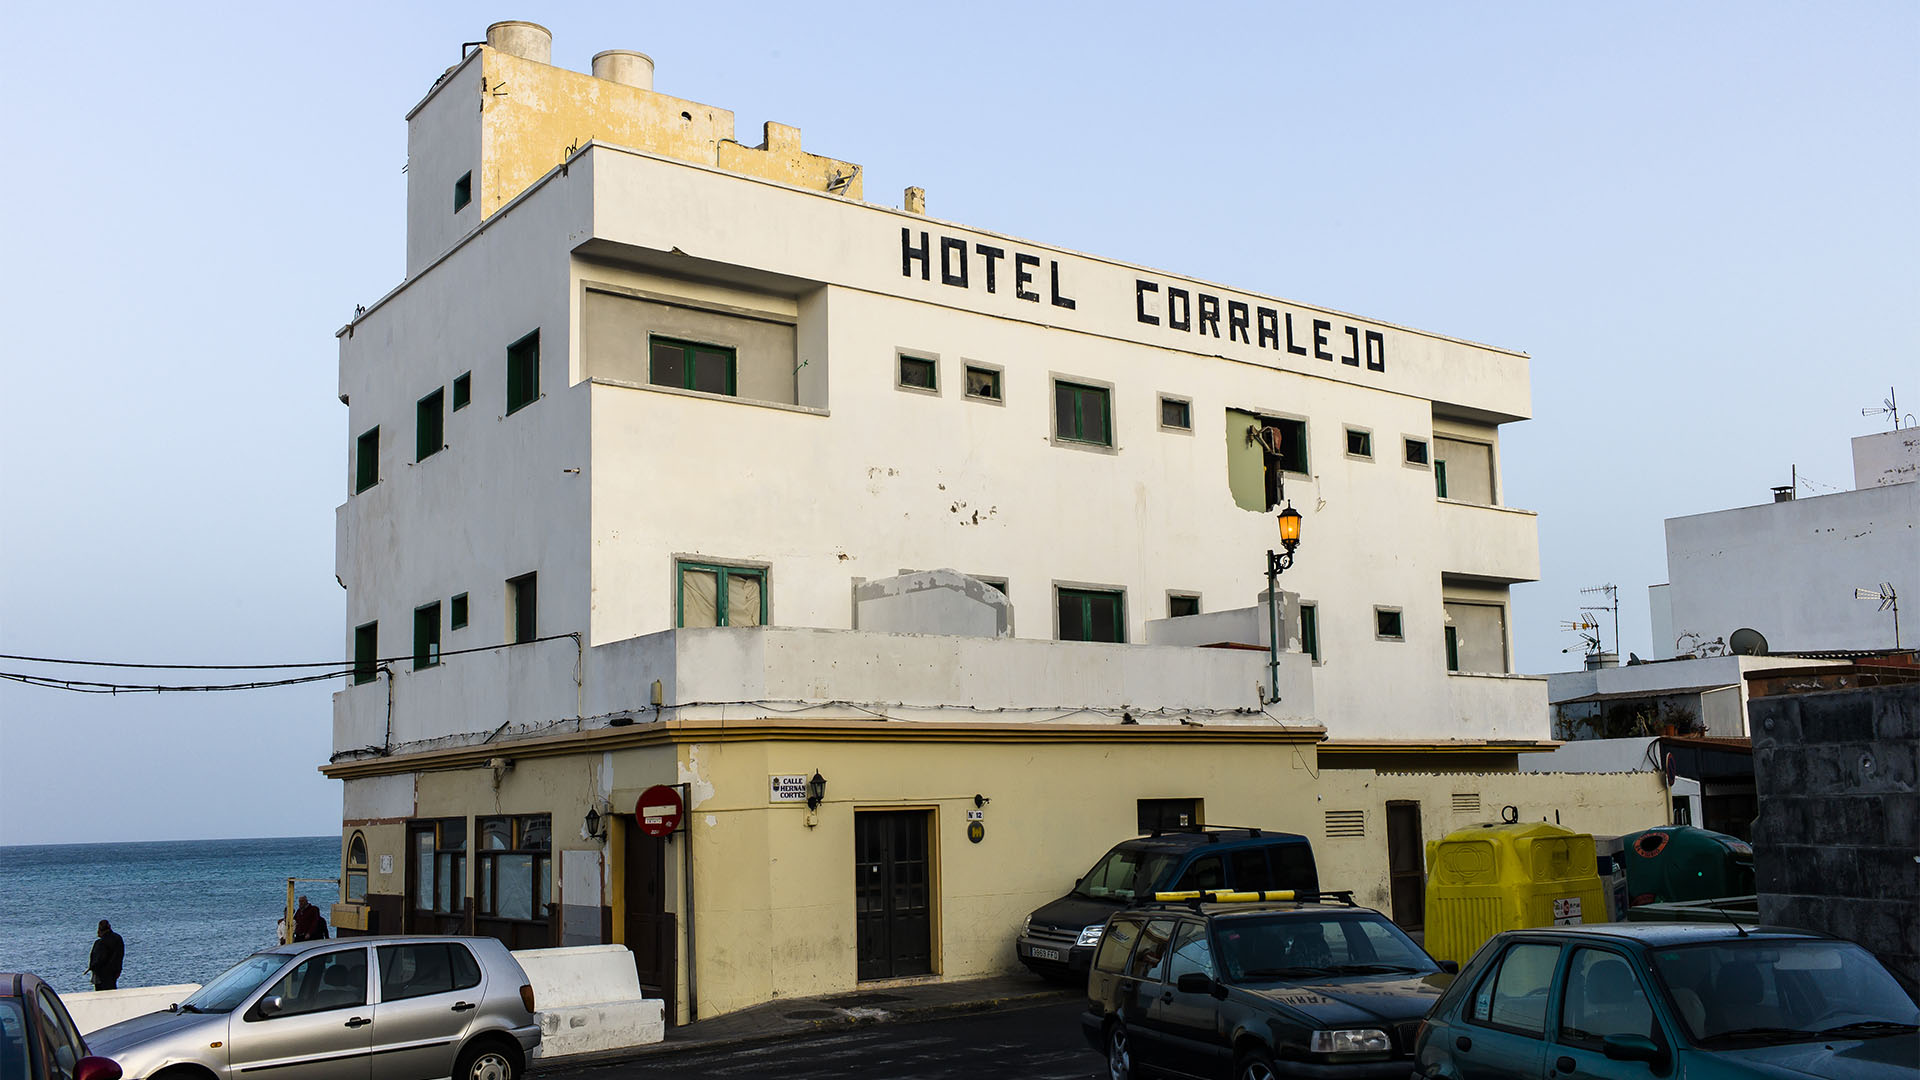 Der Ort Corralejo Fuerteventura: Das alte Hotel Corralejo noch 2012 bevor es zum schmucken Avanti Boutique Hotel" wurde.